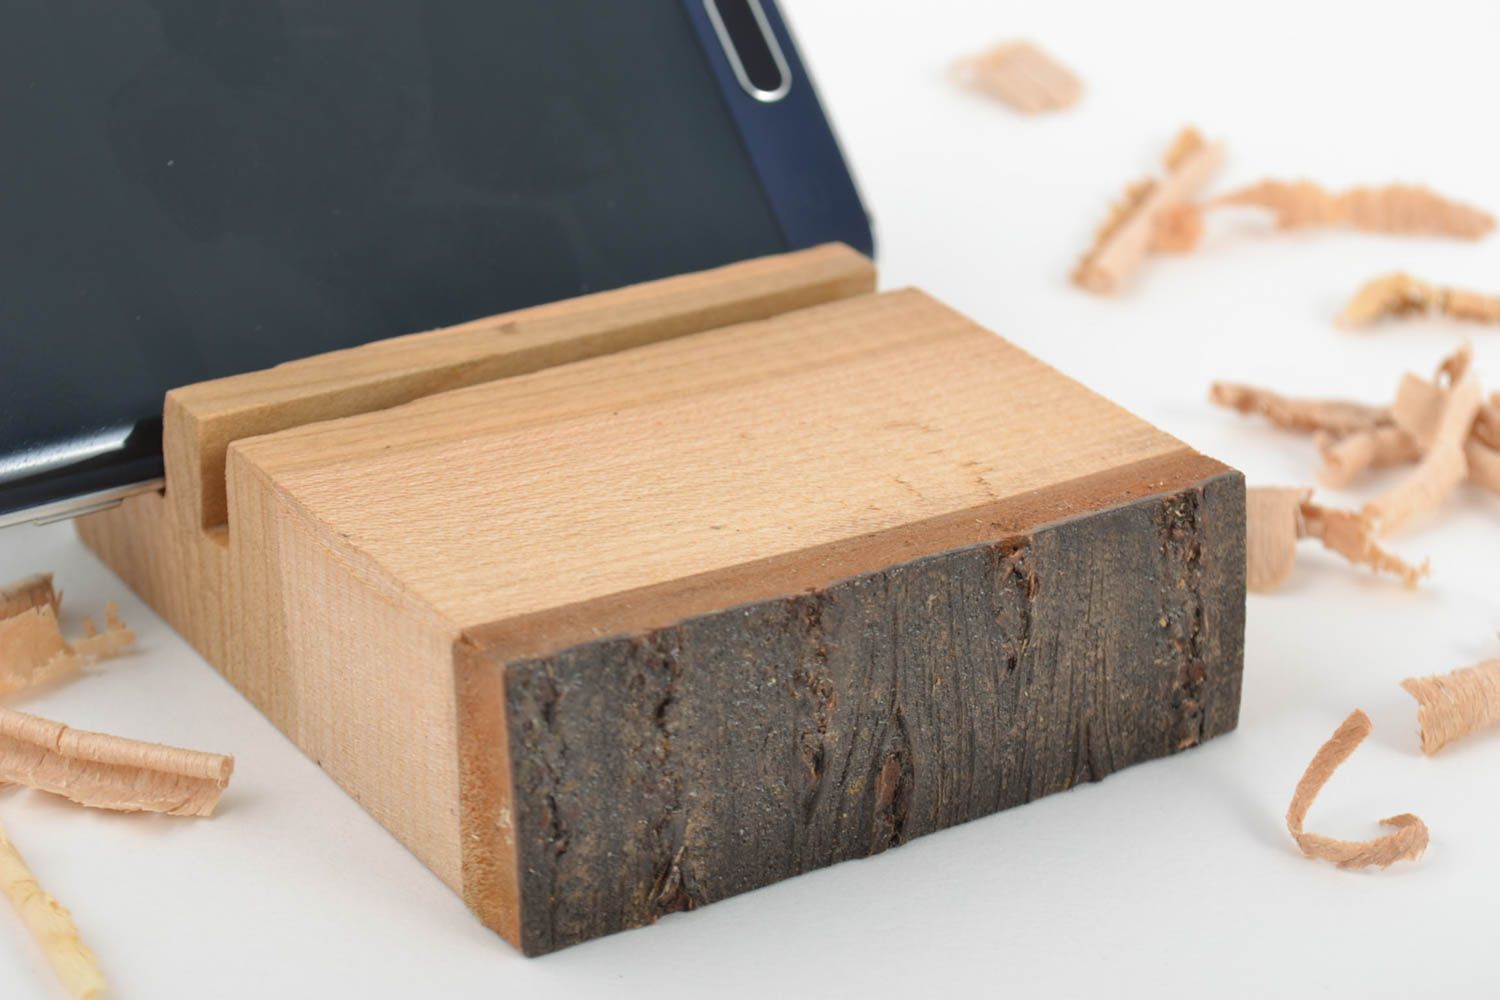 Brauner handmade Handyständer Holz kompakt schön ungewöhnlich bequem stilvoll foto 1